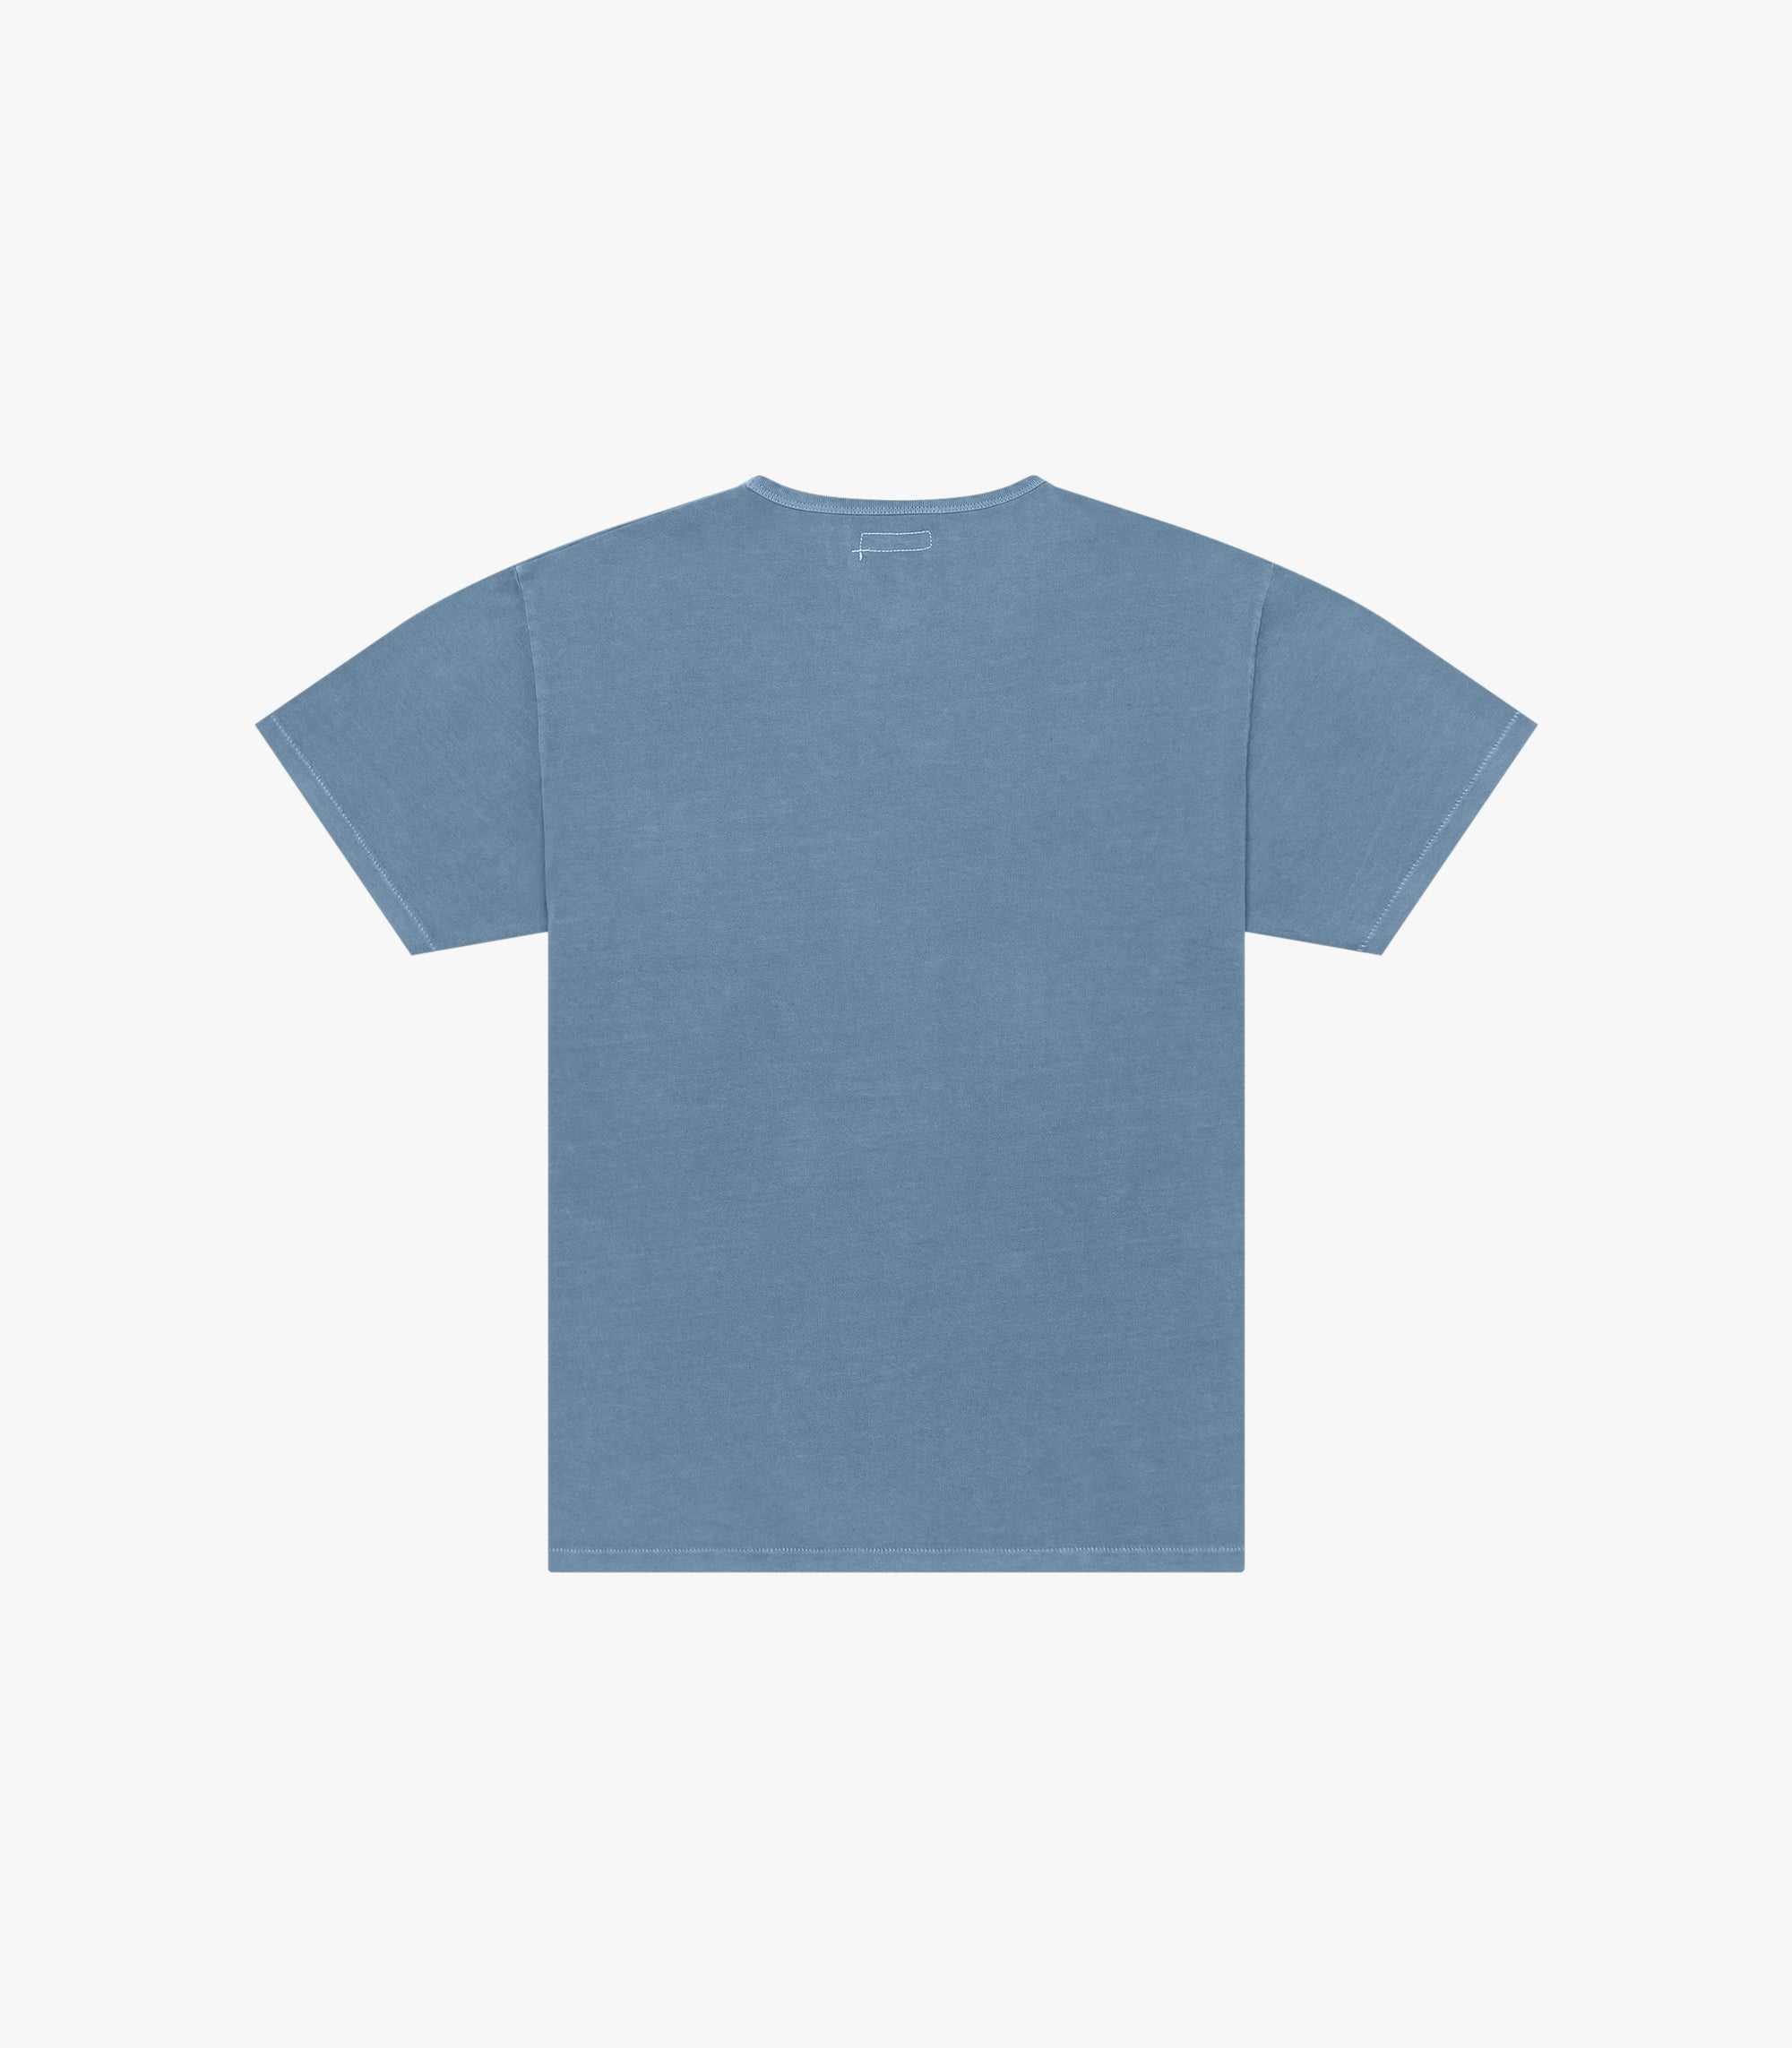 Knickerbocker Pocket T-Shirt - Pigment Marine